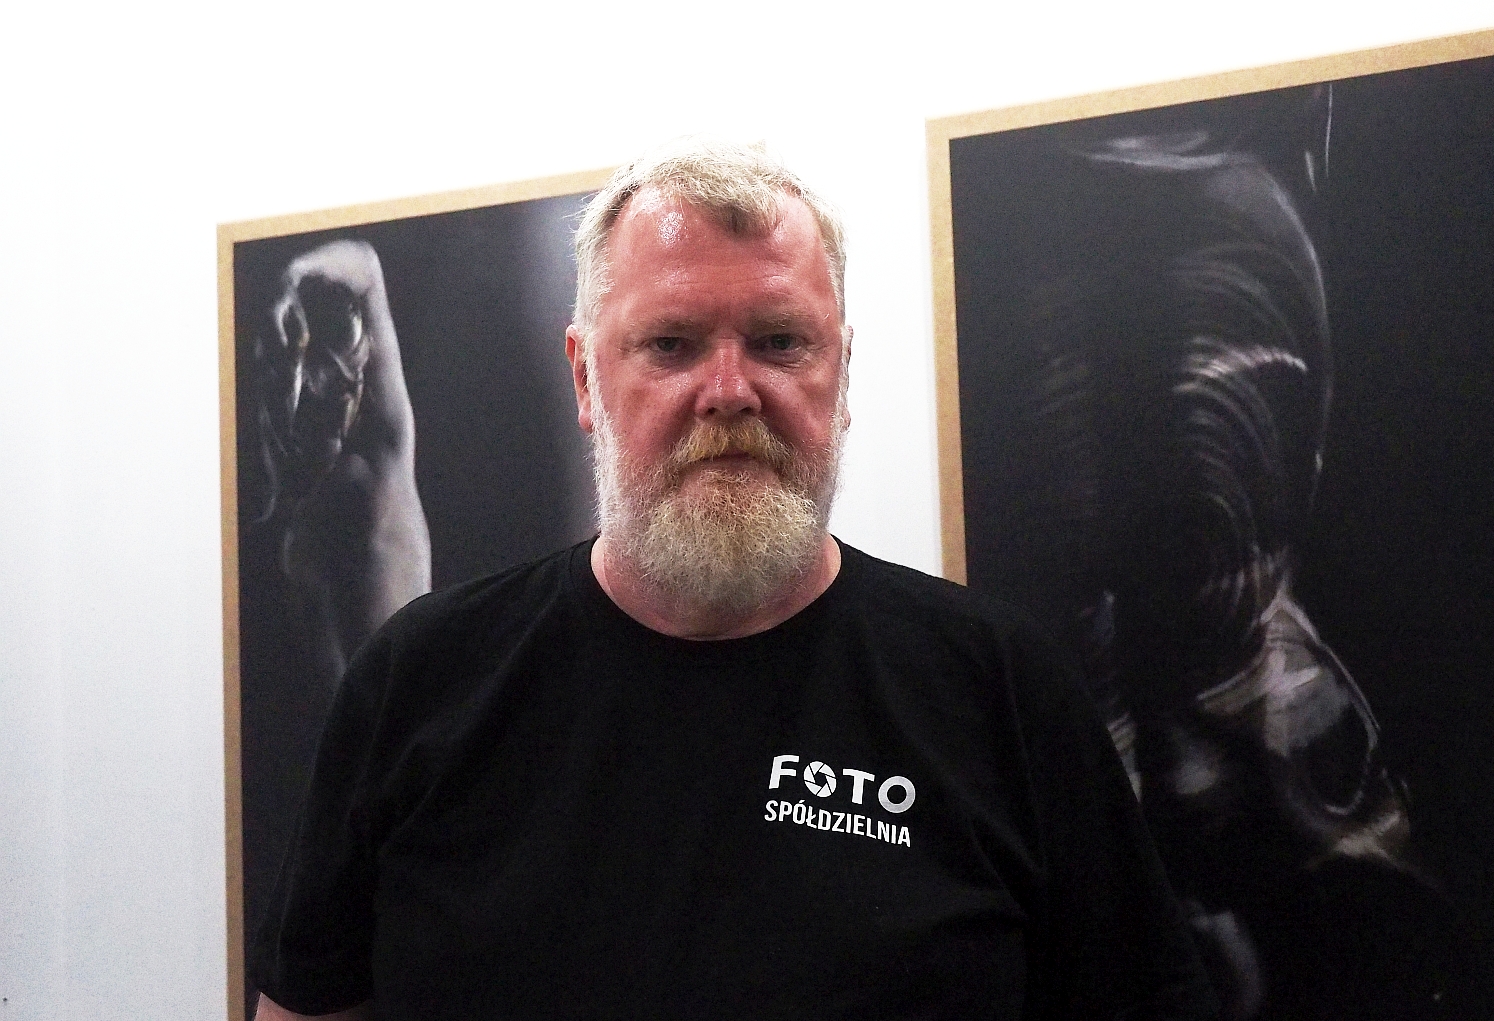 Mężczyzna w czarnym tiszercie, z siwą brodą stoi na tle ciemnych zdjęć, które powieszone są na białej ścianie